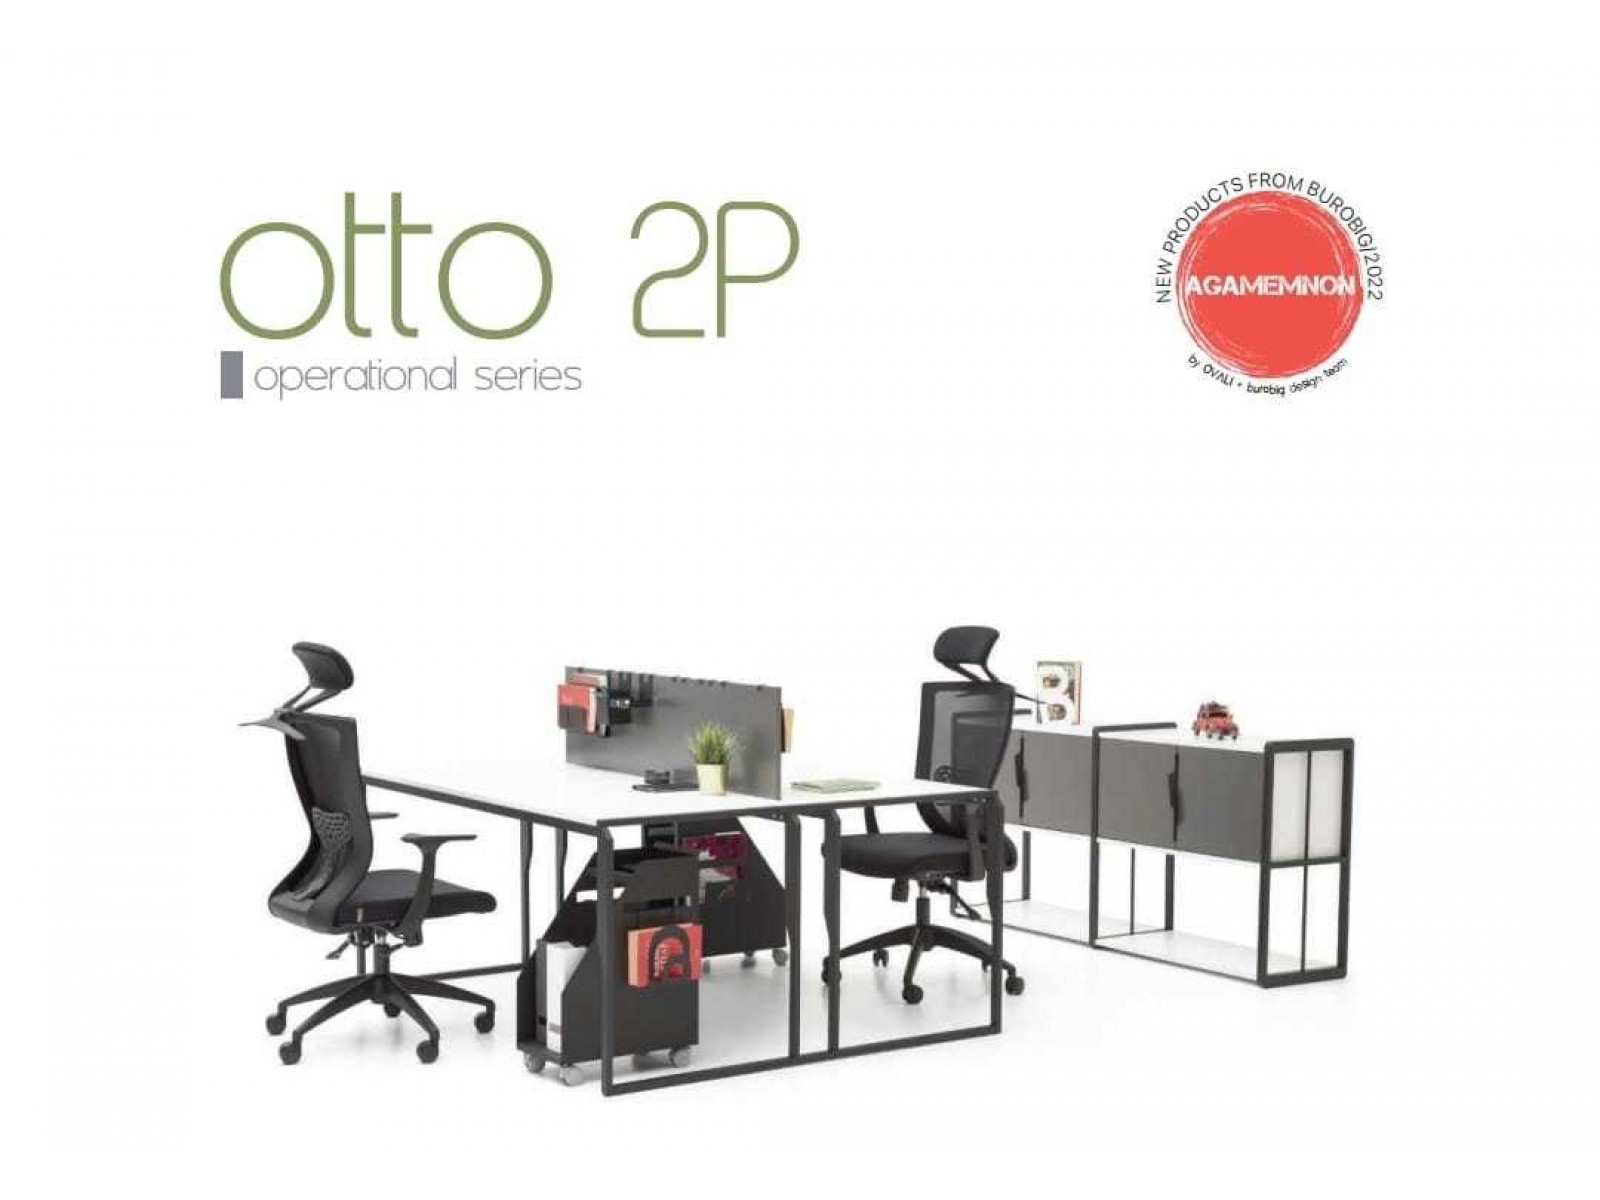 Otto 2p çalışma masası